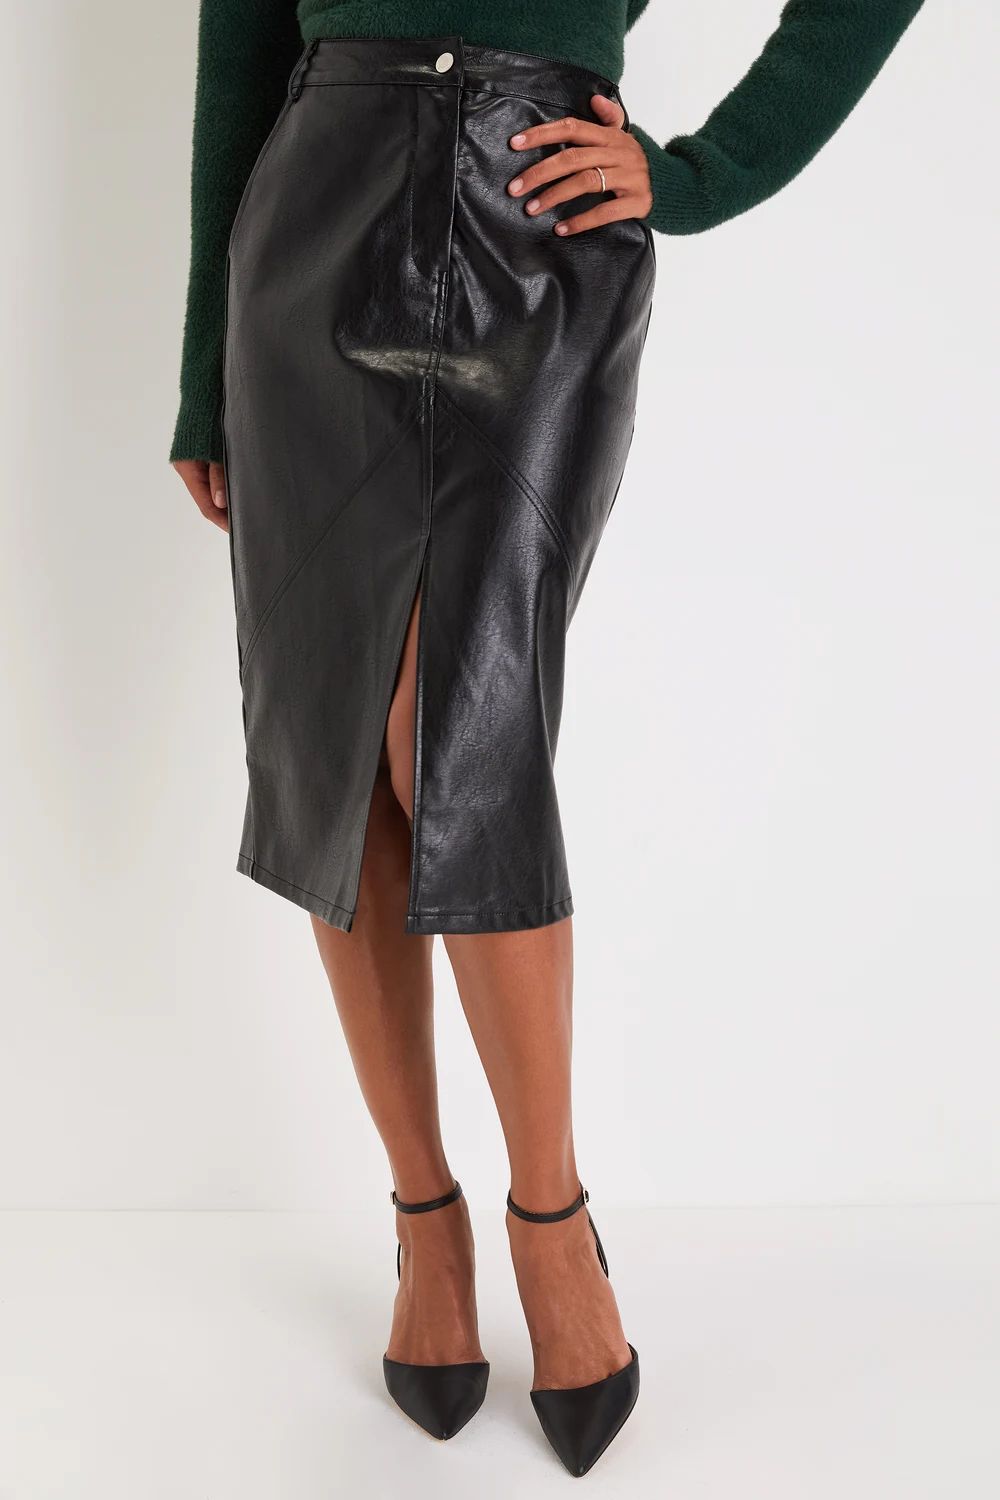 Sleek Upgrade Black Vegan Leather High-Rise Midi Skirt | Lulus (US)